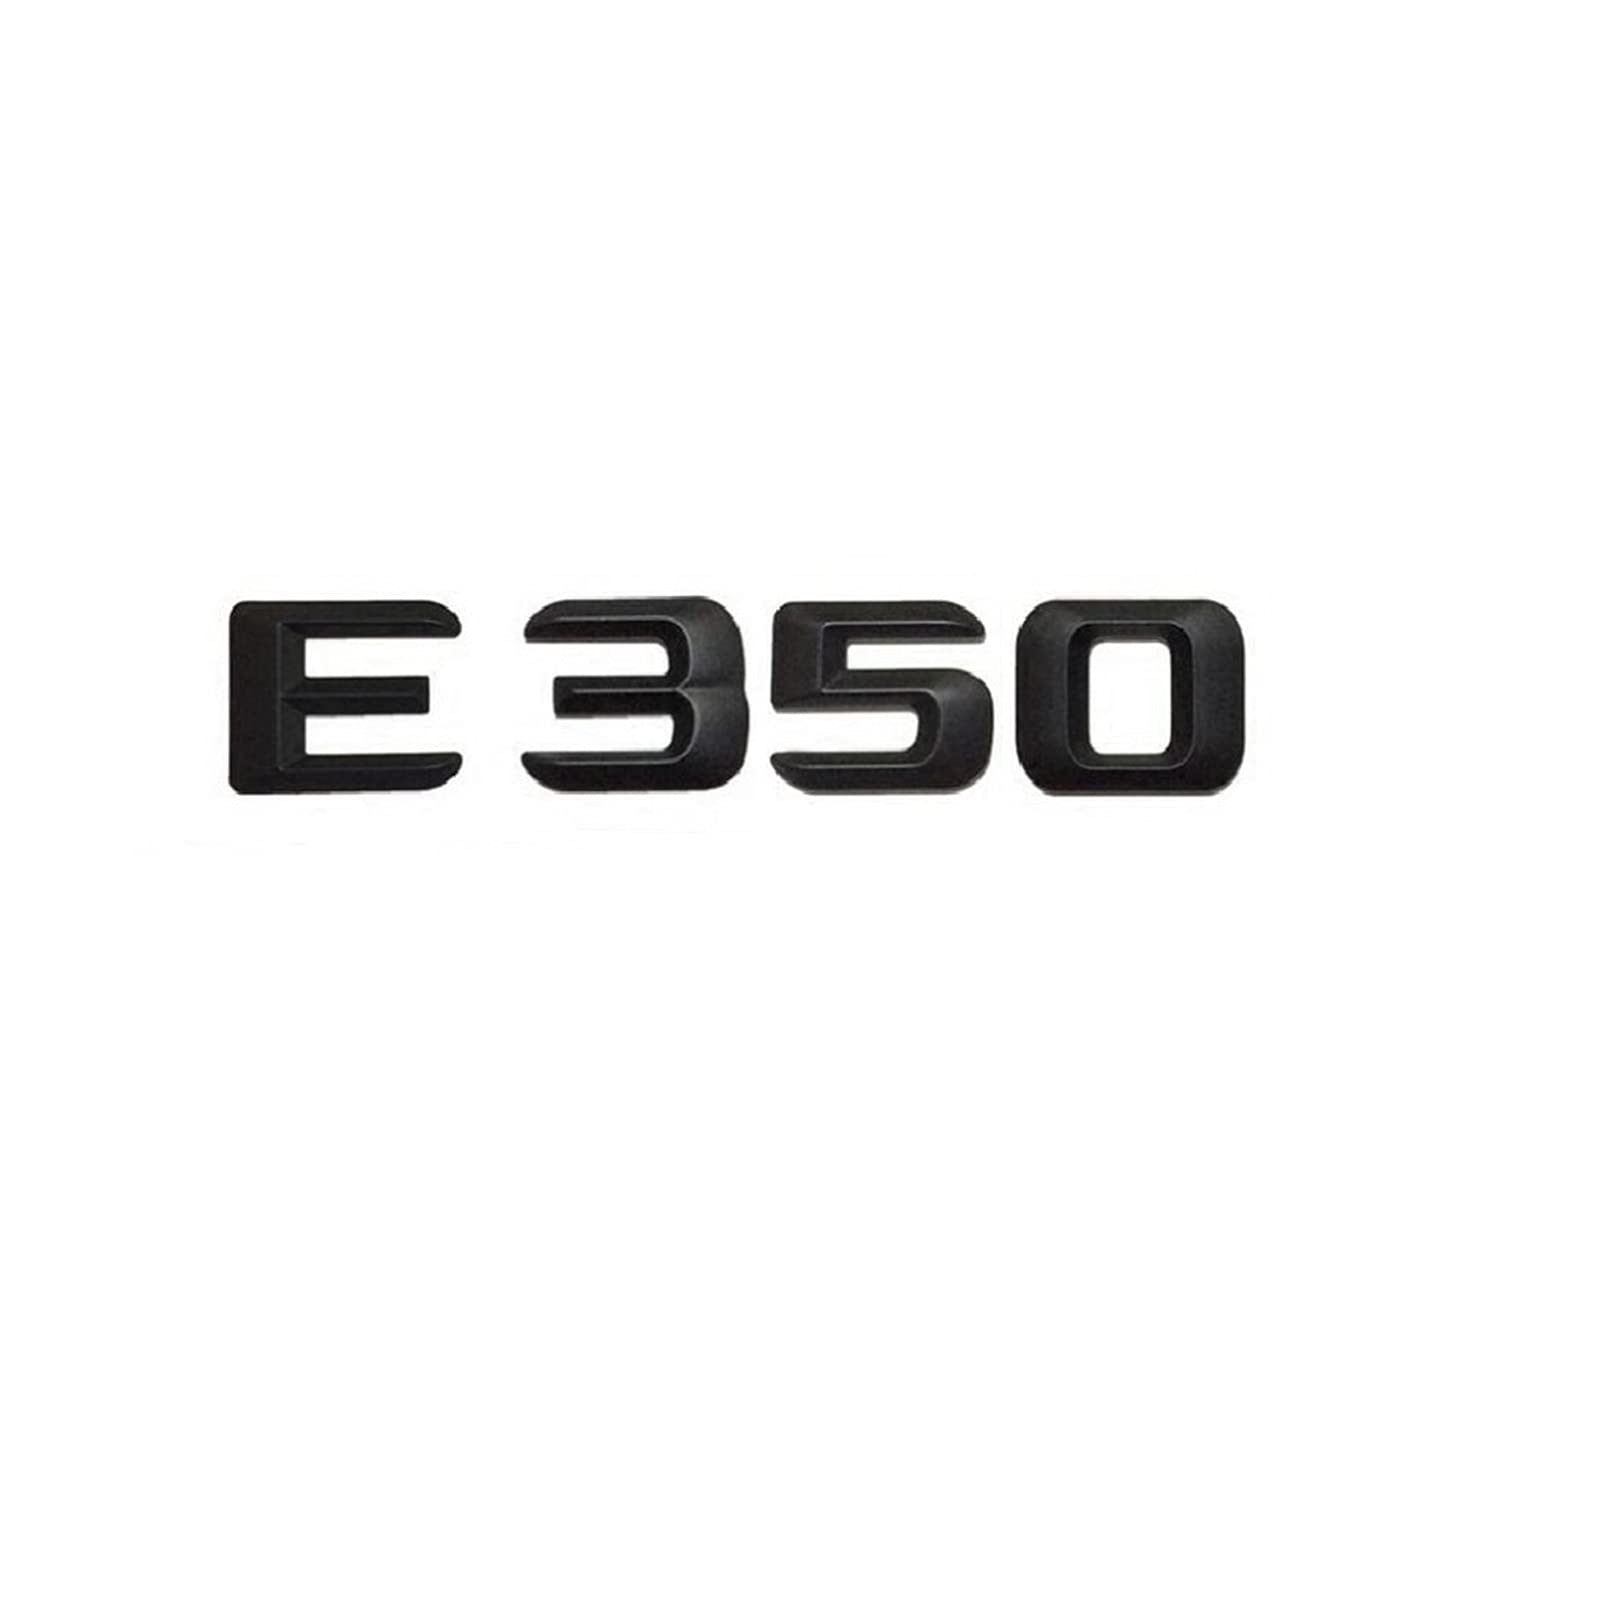 BMINO ABS Mattschwarz E 350" Auto-Kofferraum-hintere Buchstaben-Wort-Abzeichen-Emblem-Buchstaben-Aufkleber-Aufkleber, kompatibel mit Mercedes Benz E-Klasse E350 Logo-Aufkleber von BMINO